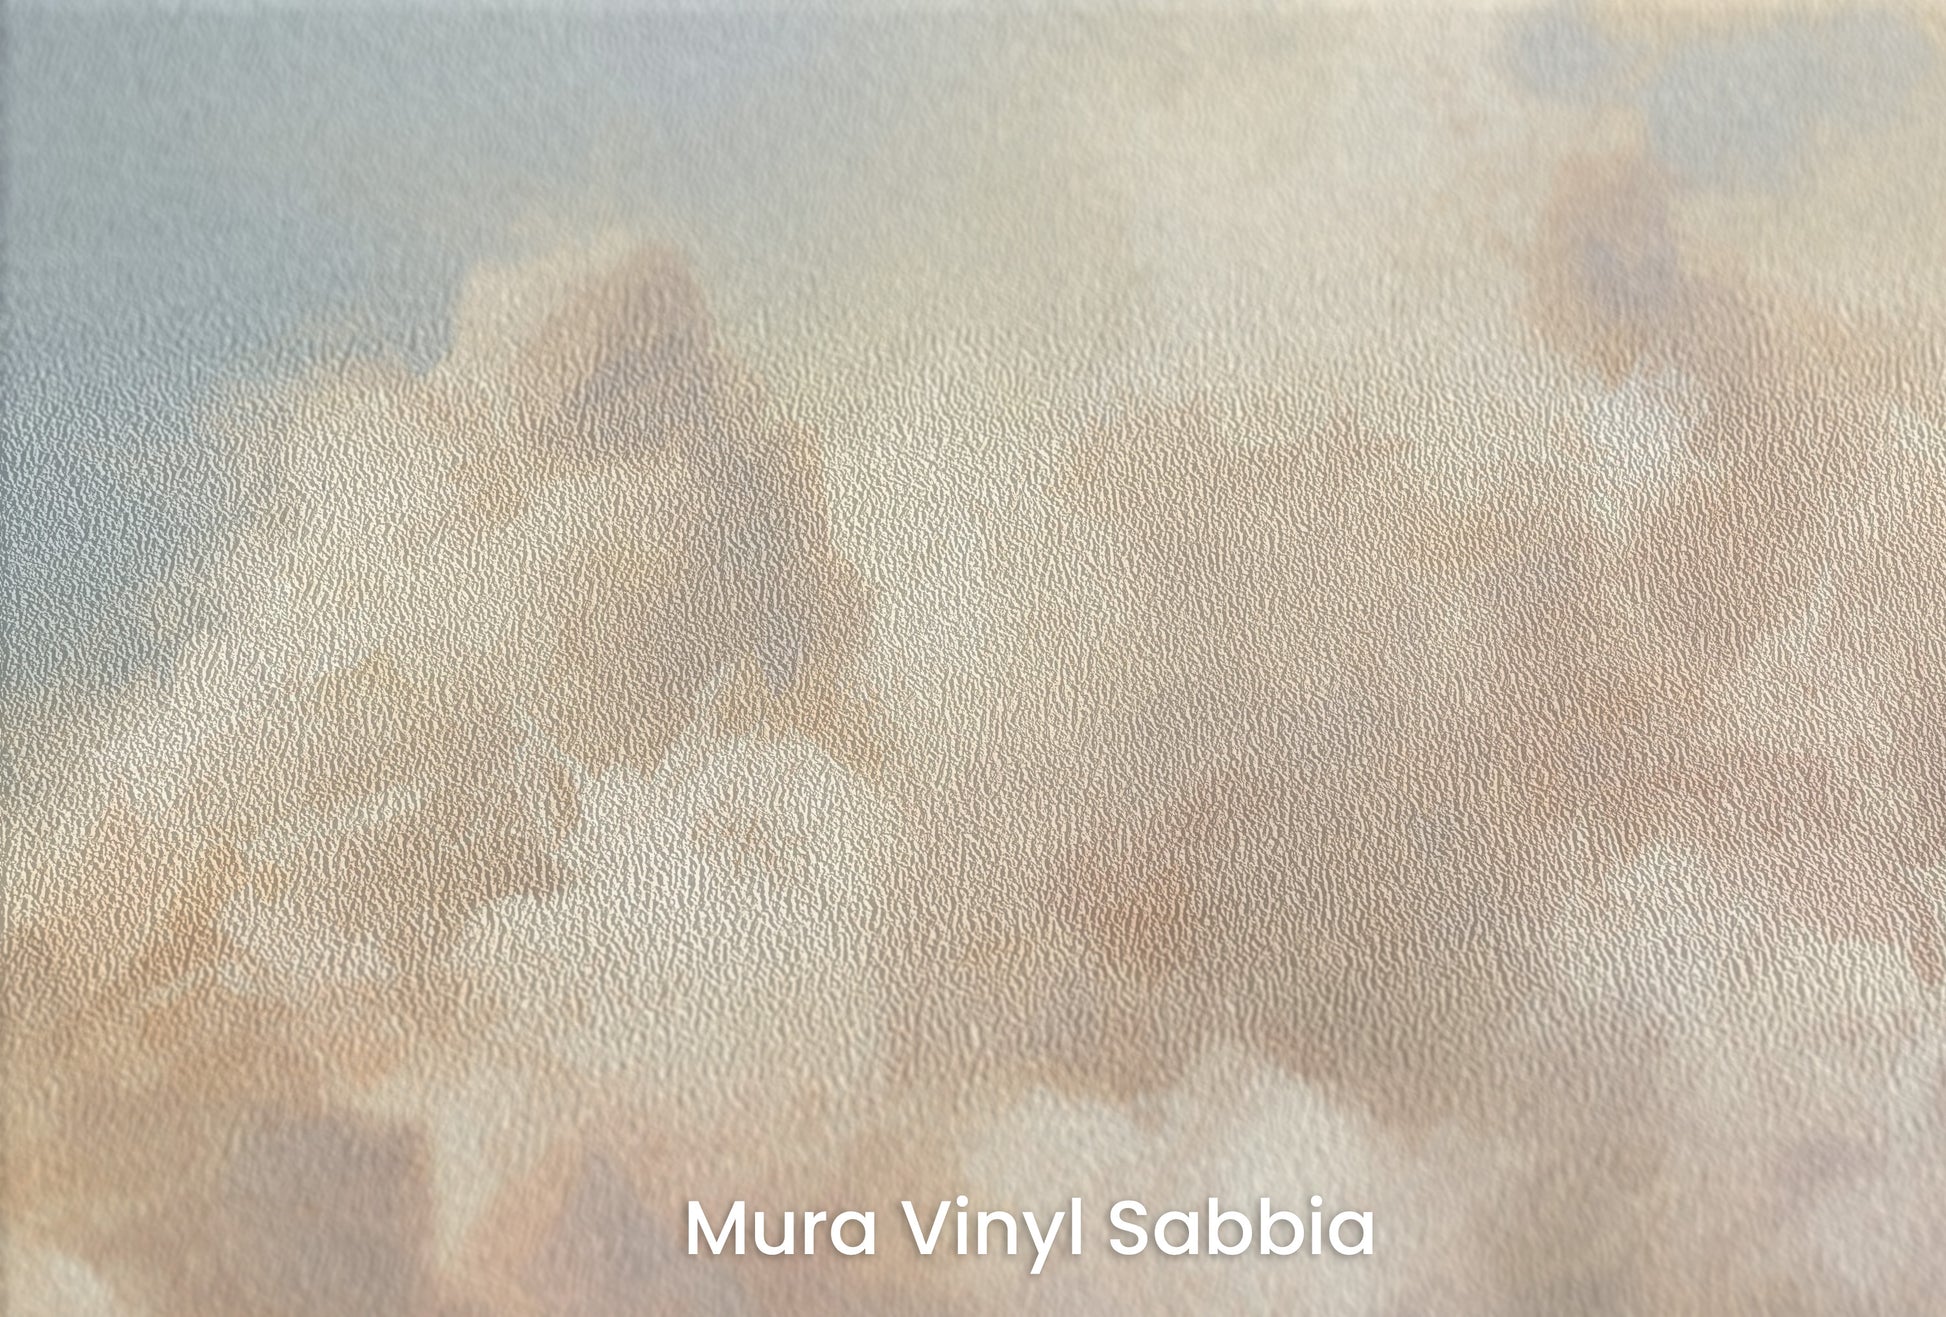 Zbliżenie na artystyczną fototapetę o nazwie TWILIGHT SERENADE GLOW na podłożu Mura Vinyl Sabbia struktura grubego ziarna piasku.